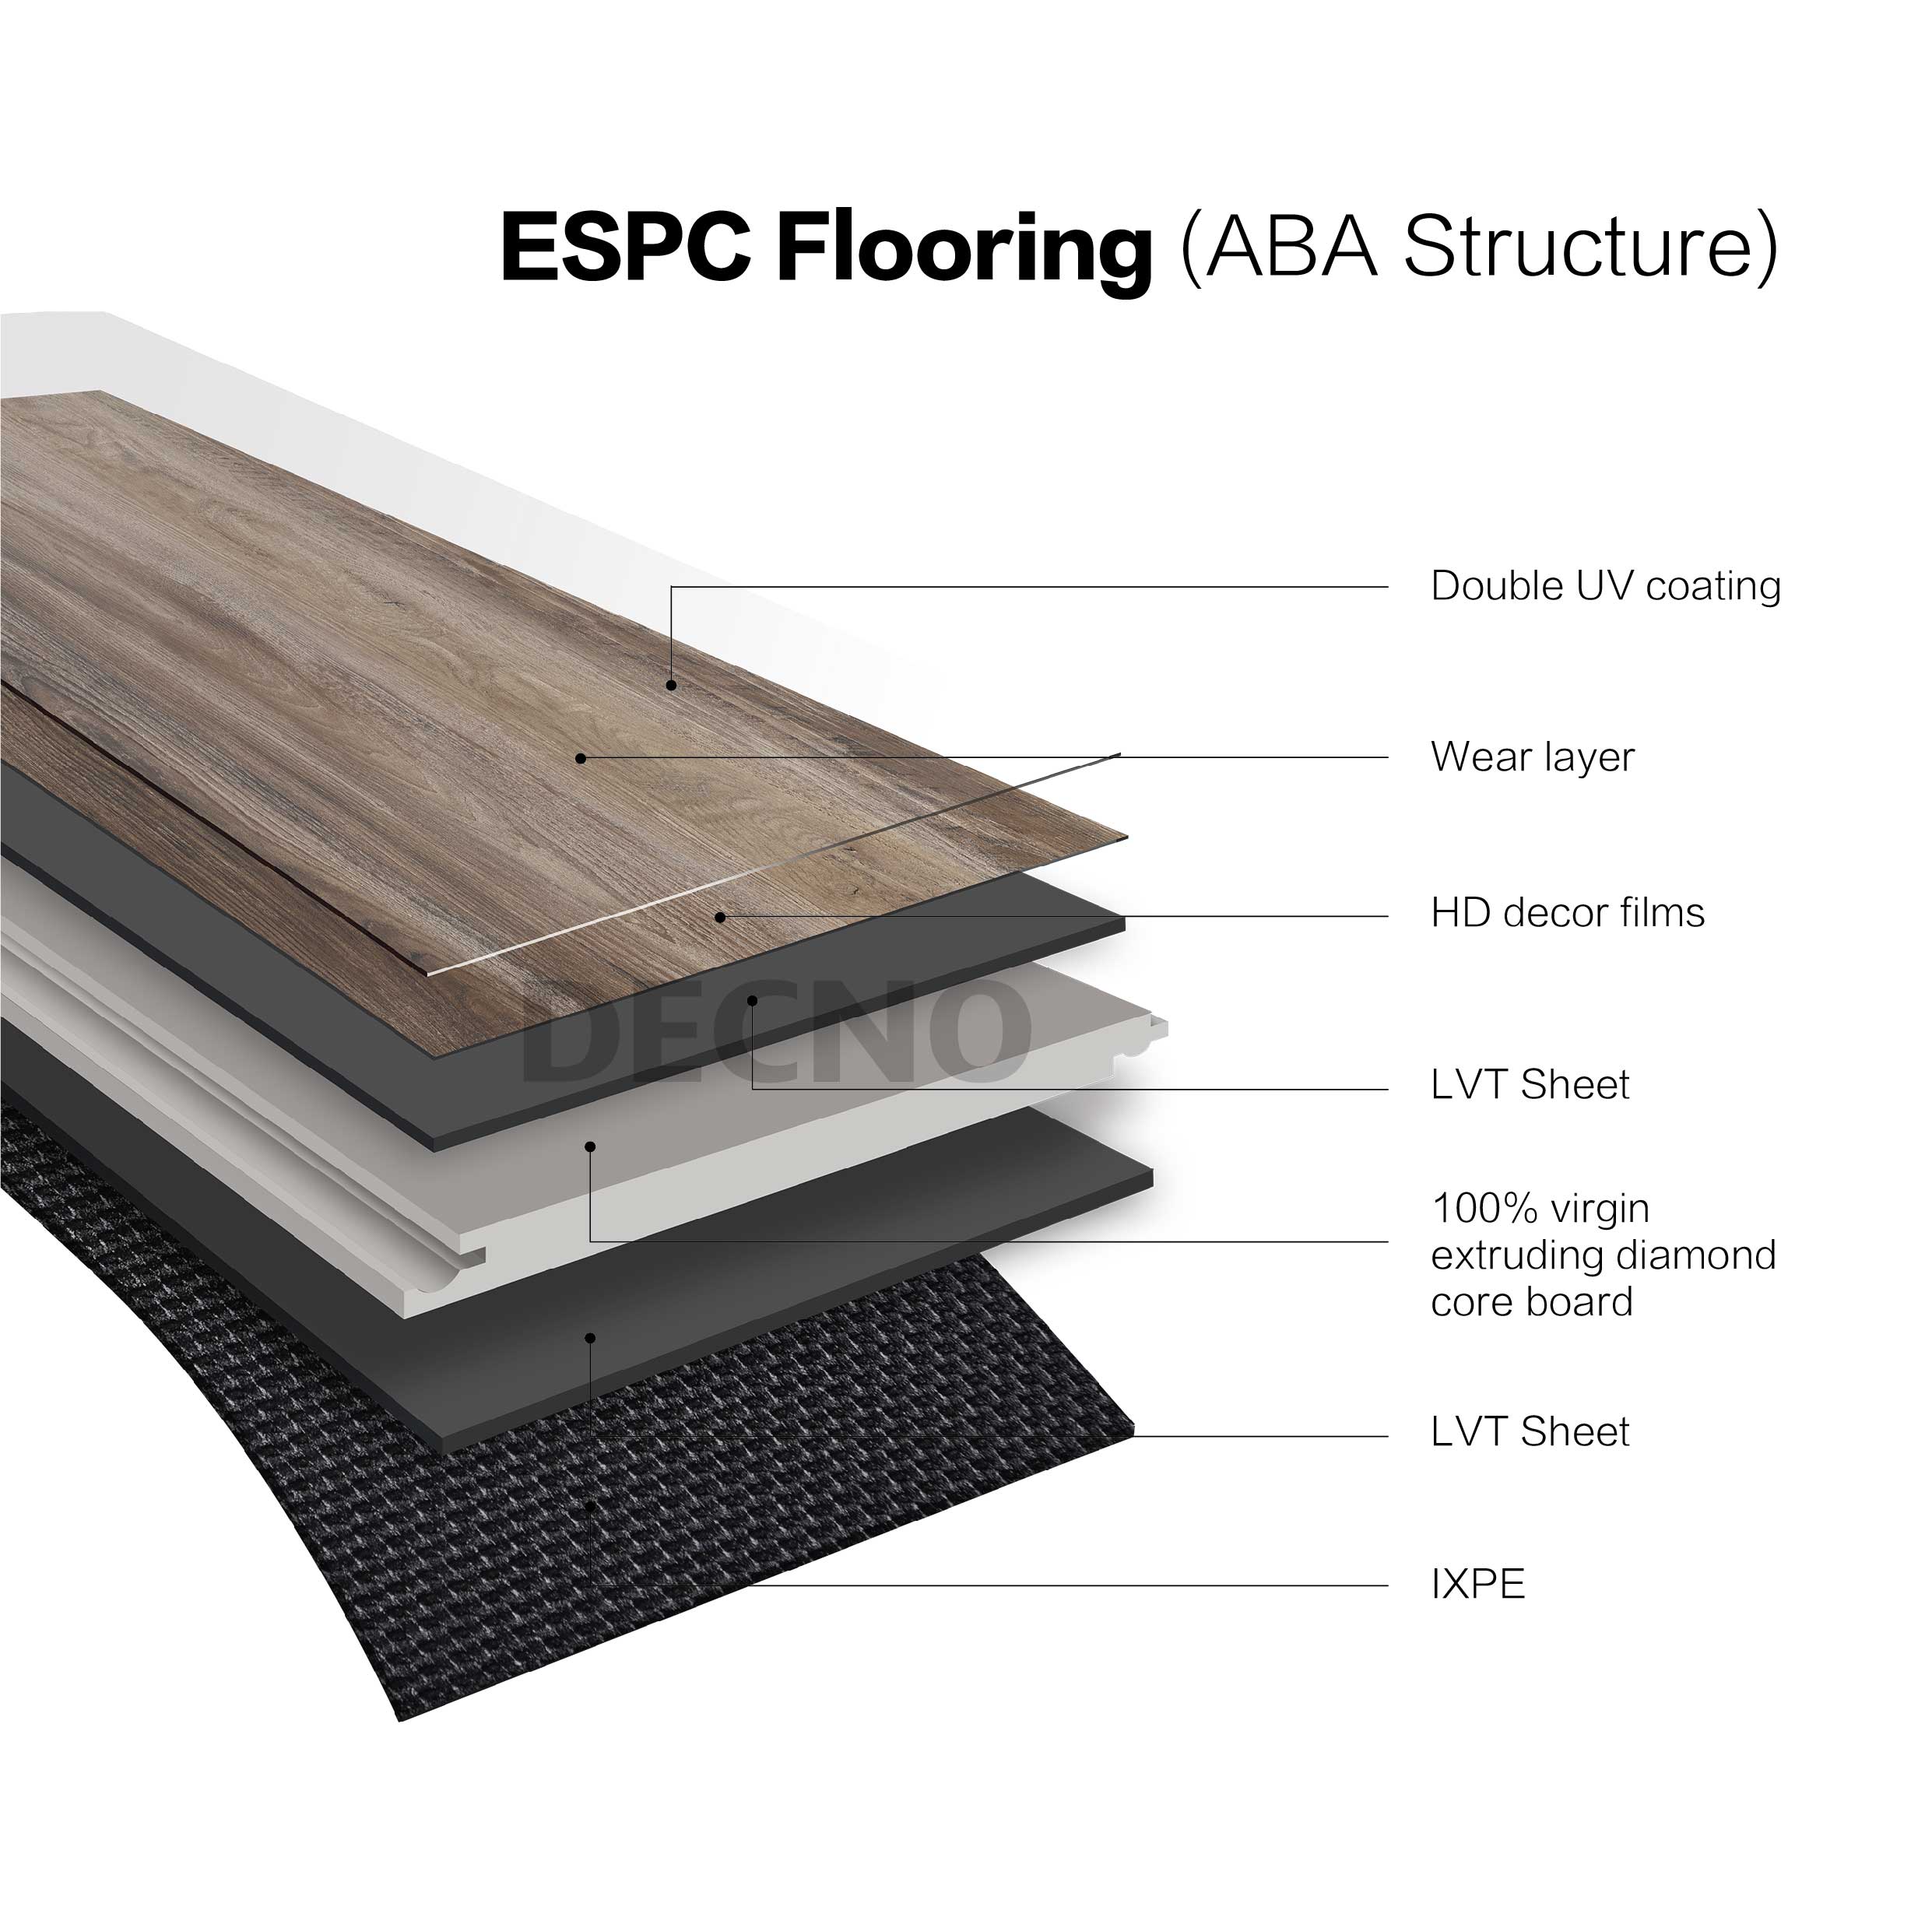 ESPC Flooring